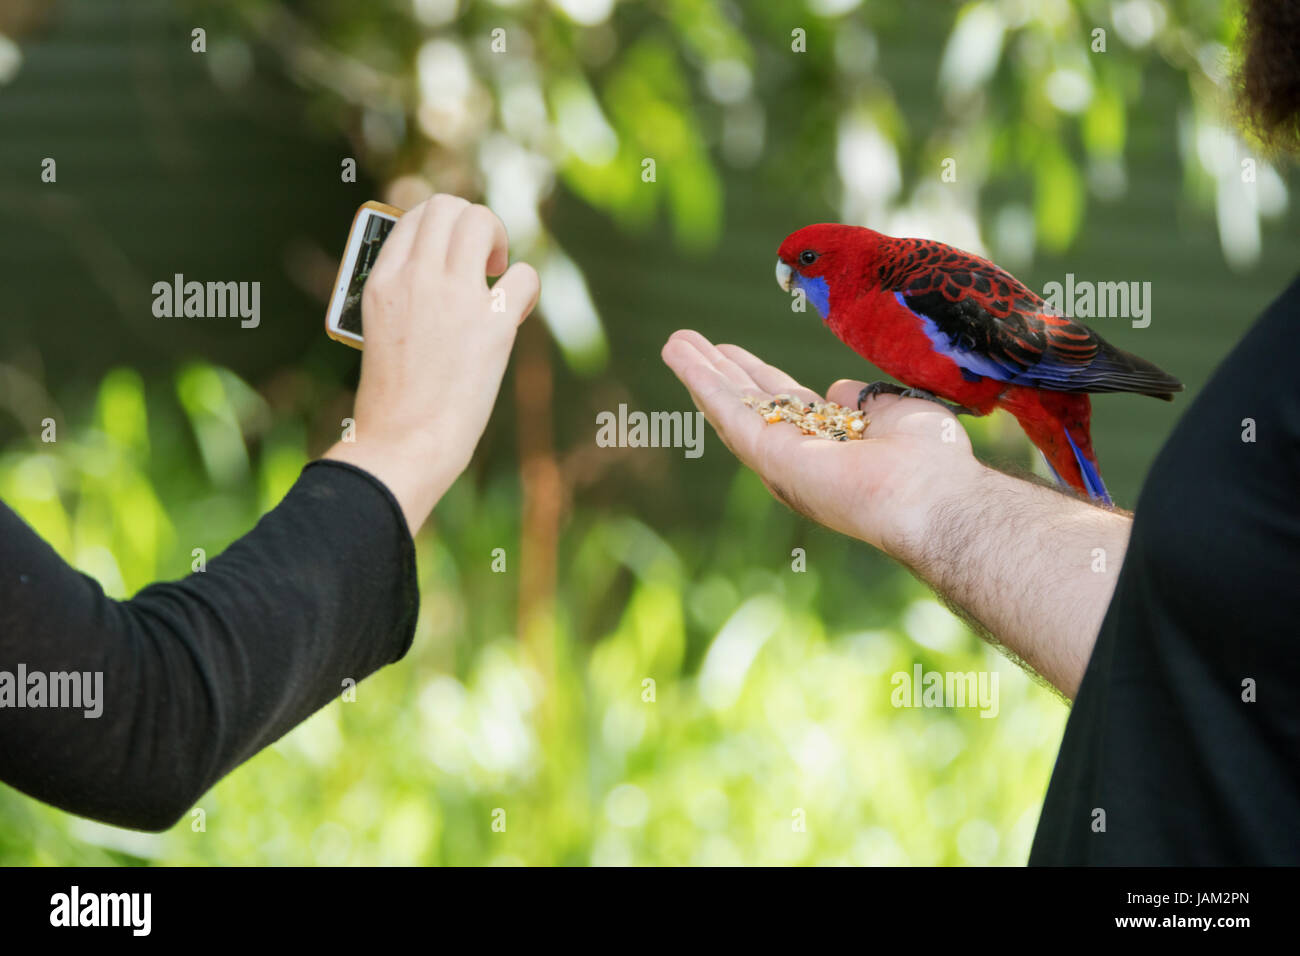 Perroquet australien rouge graines de manger d'une main tout en un autre touriste touristes prend une photo avec un téléphone Banque D'Images